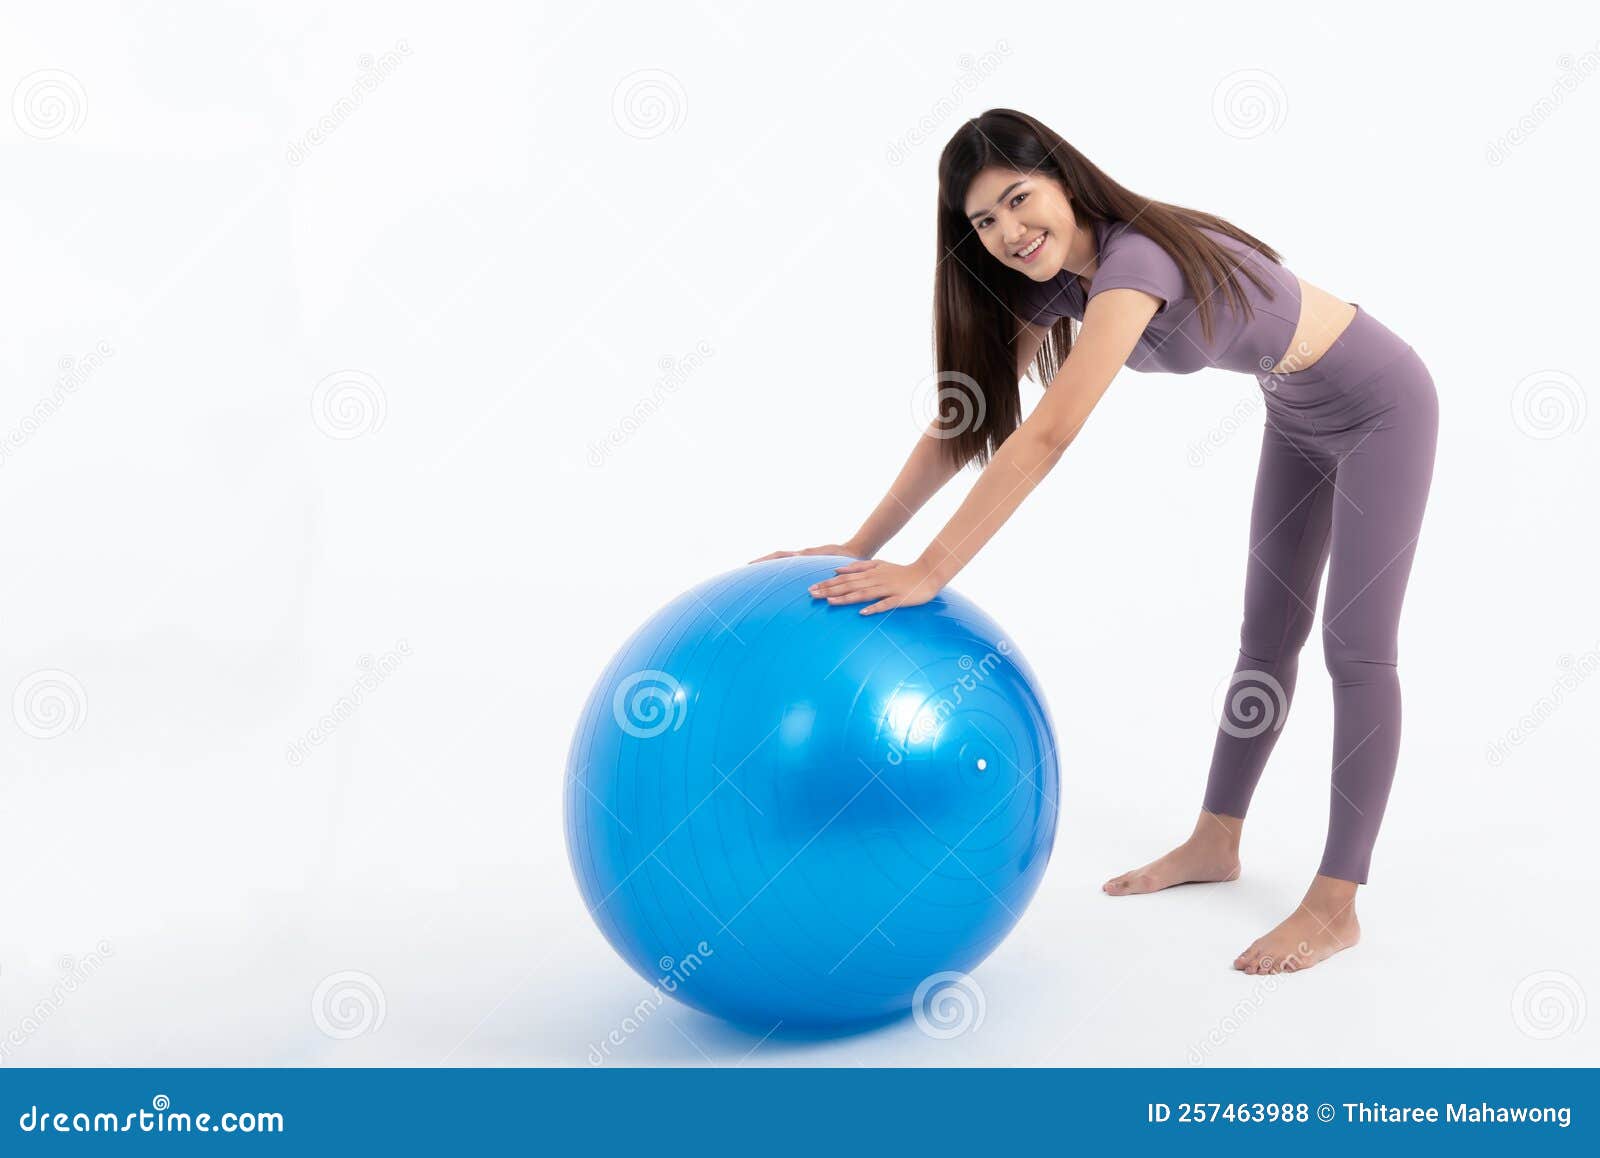 Hacer Ejercicios Usando La Bola De Fitness. Mujer Con Ropa